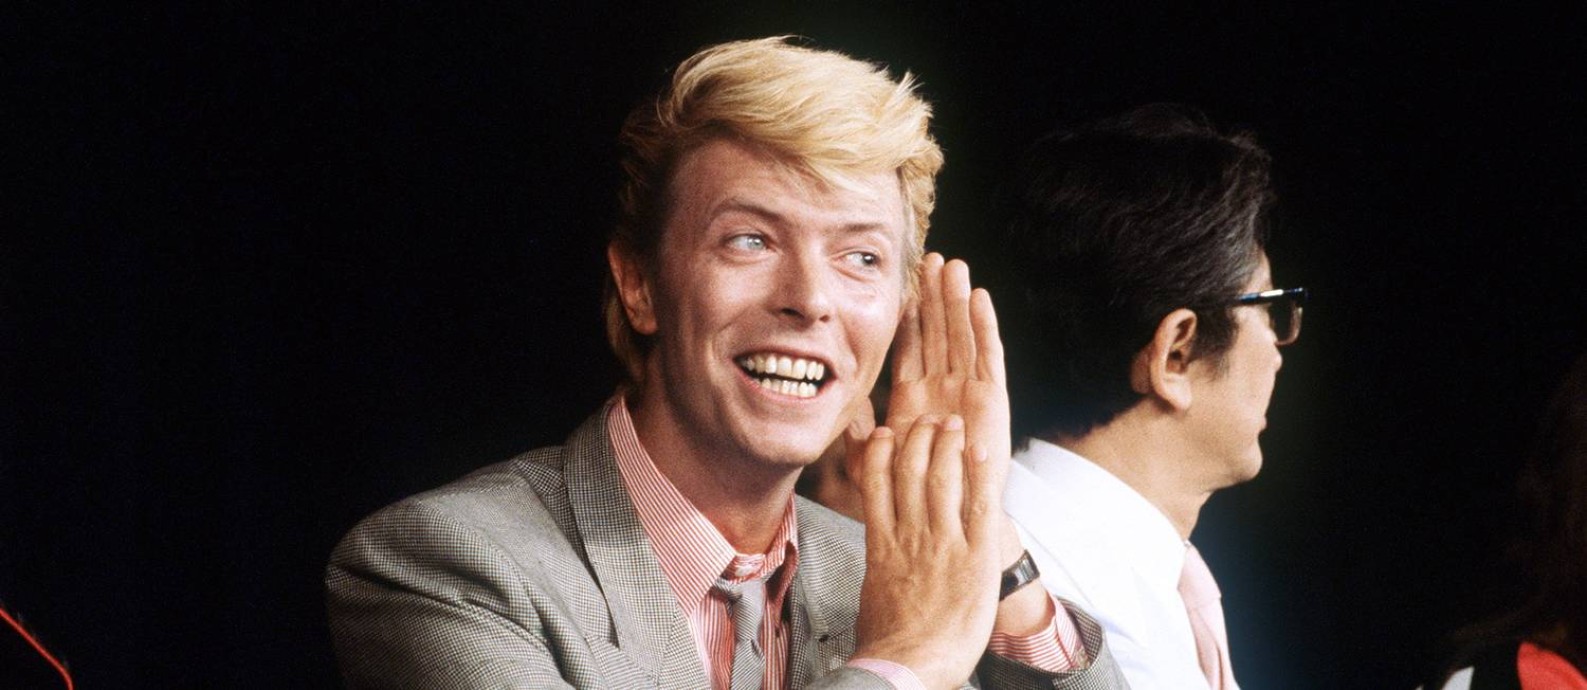 
‘Garoto safado’. Livro diz que Bowie usou sex appeal para avançar na carreira
Foto:
Divulgação/ RALPH GATTI
/
